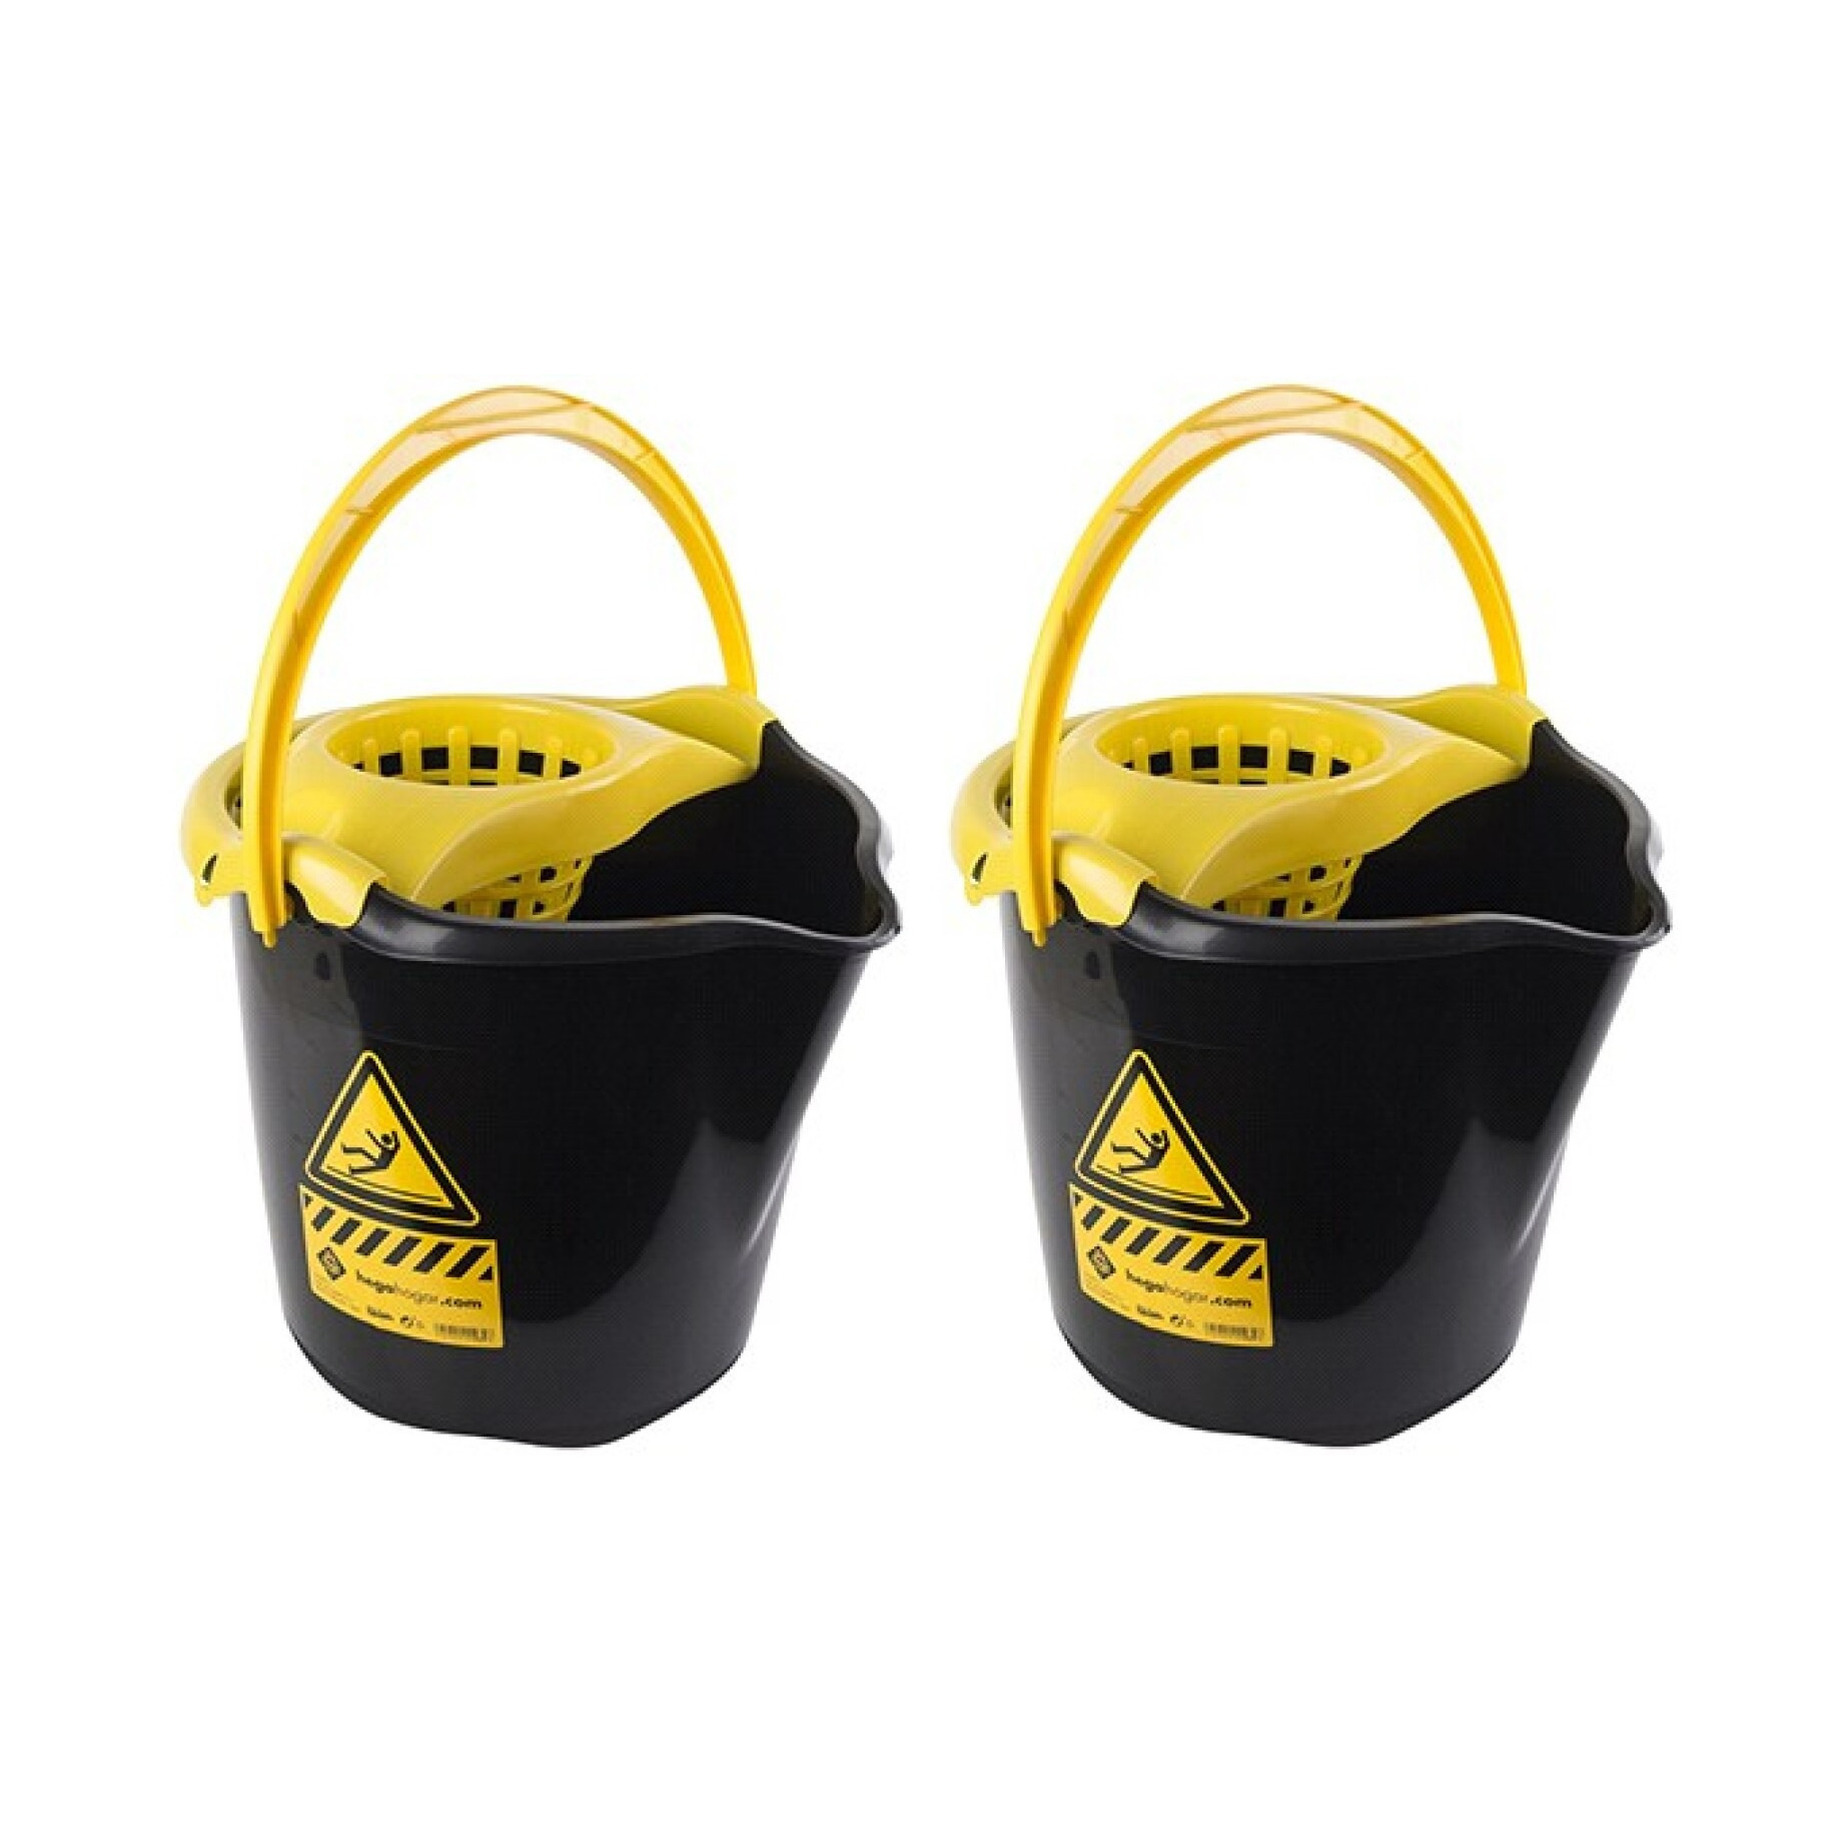 2x Huishoudemmers met dweil houder 13,5 liter zwart-geel caution 32 x 30 cm